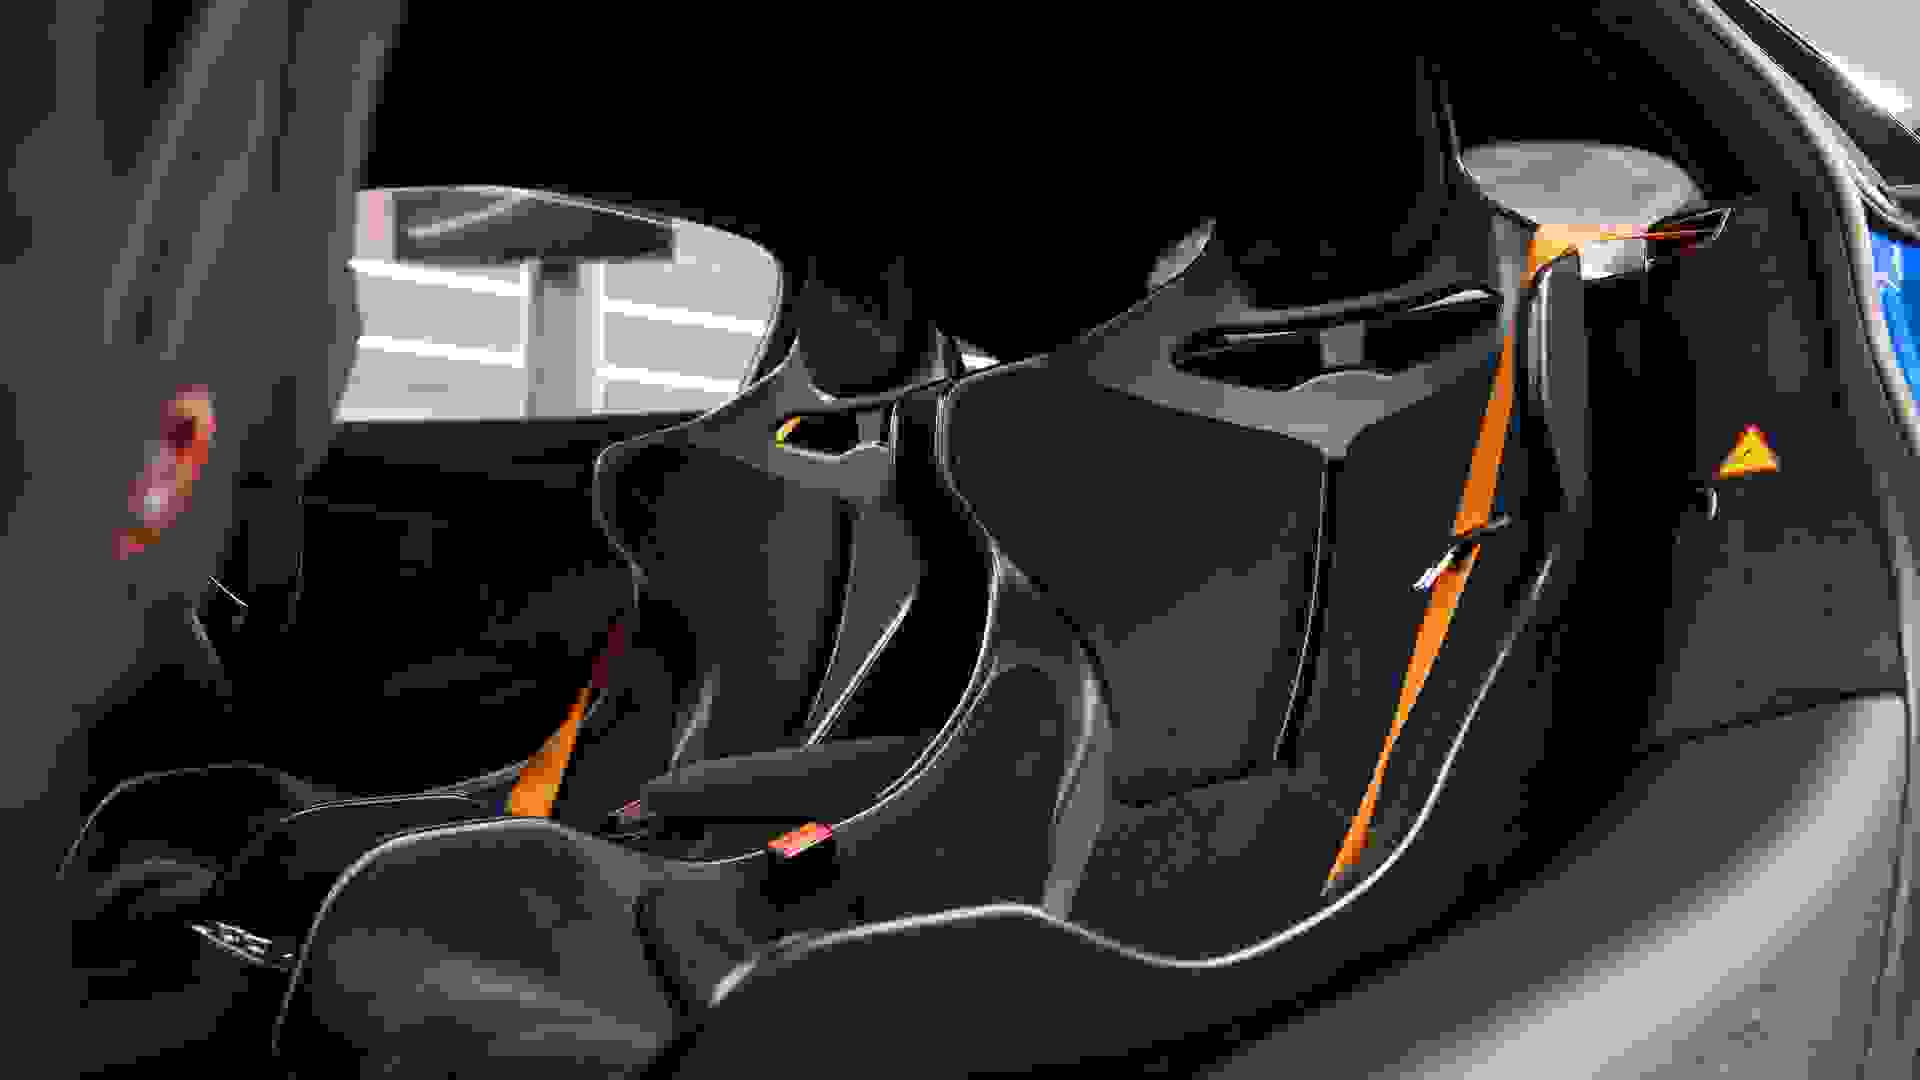 McLaren 600LT Photo e6ab39f1-828c-488f-b2a2-c2ed78fb7389.jpg